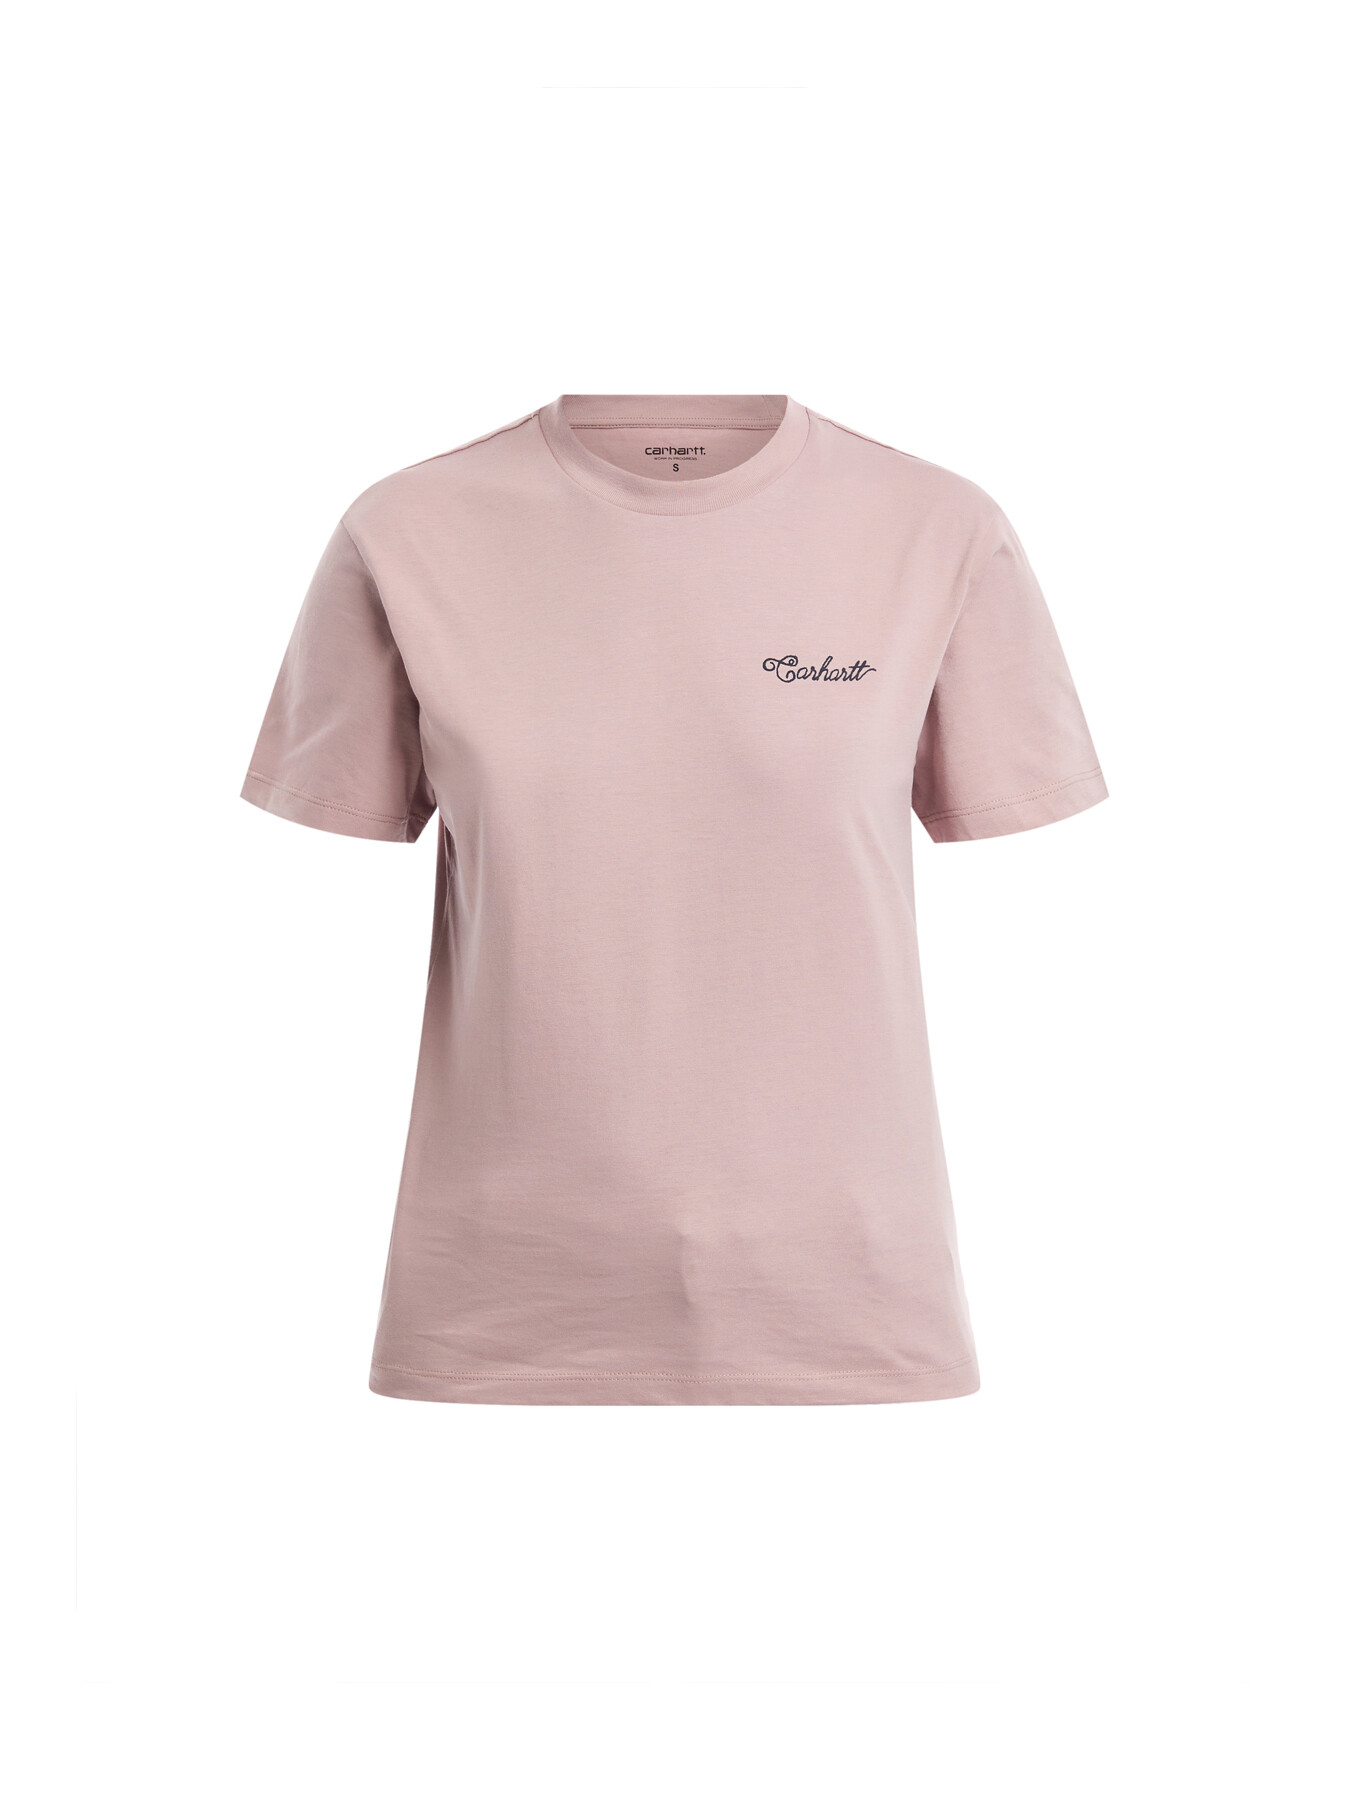 Carhartt Women's Short Sleeve Stitch T-shirt Pink